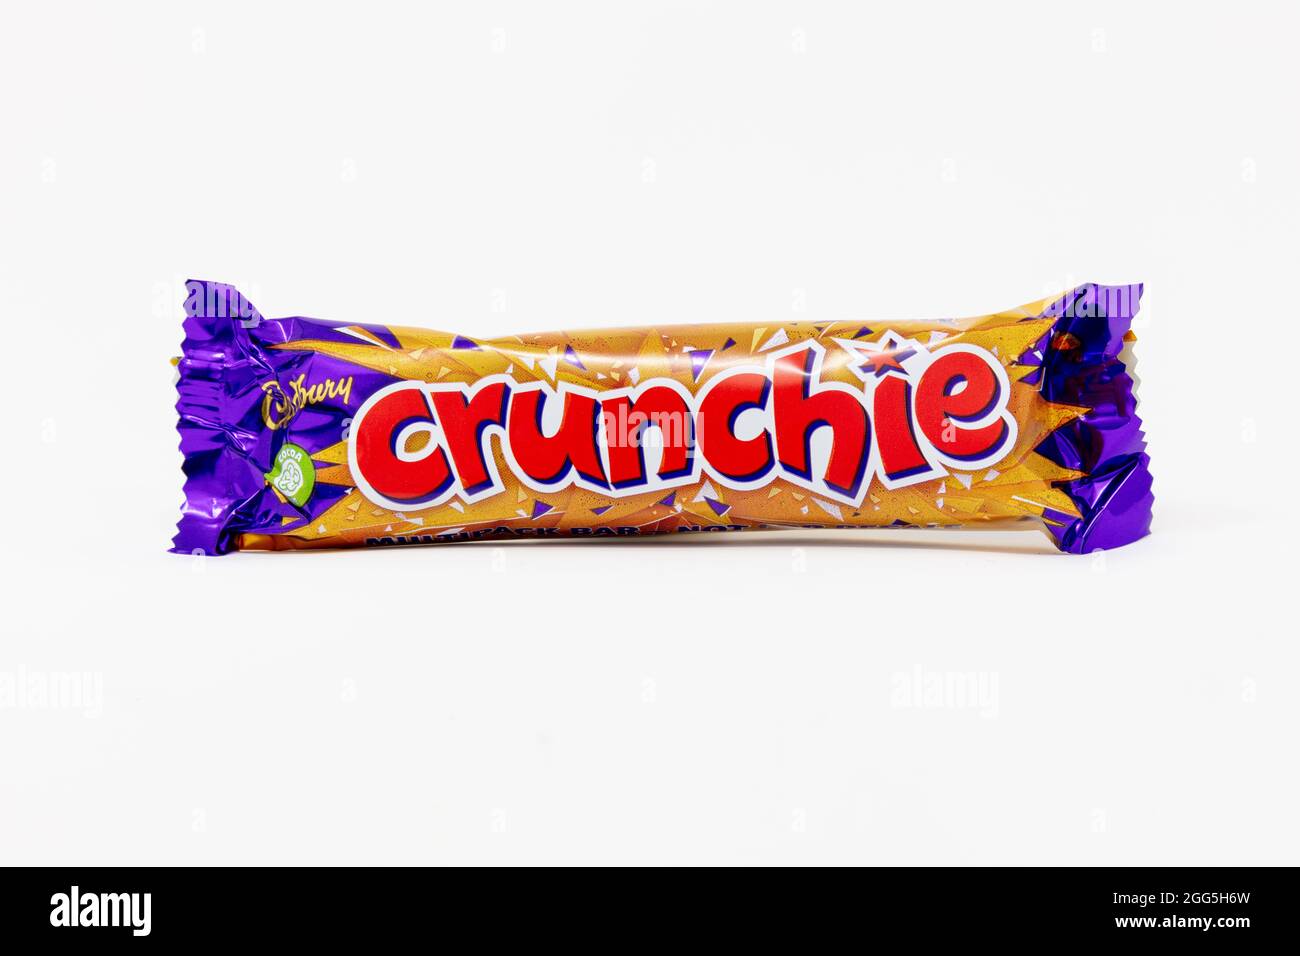 Cadbury Crunchie Bar Stock Photo